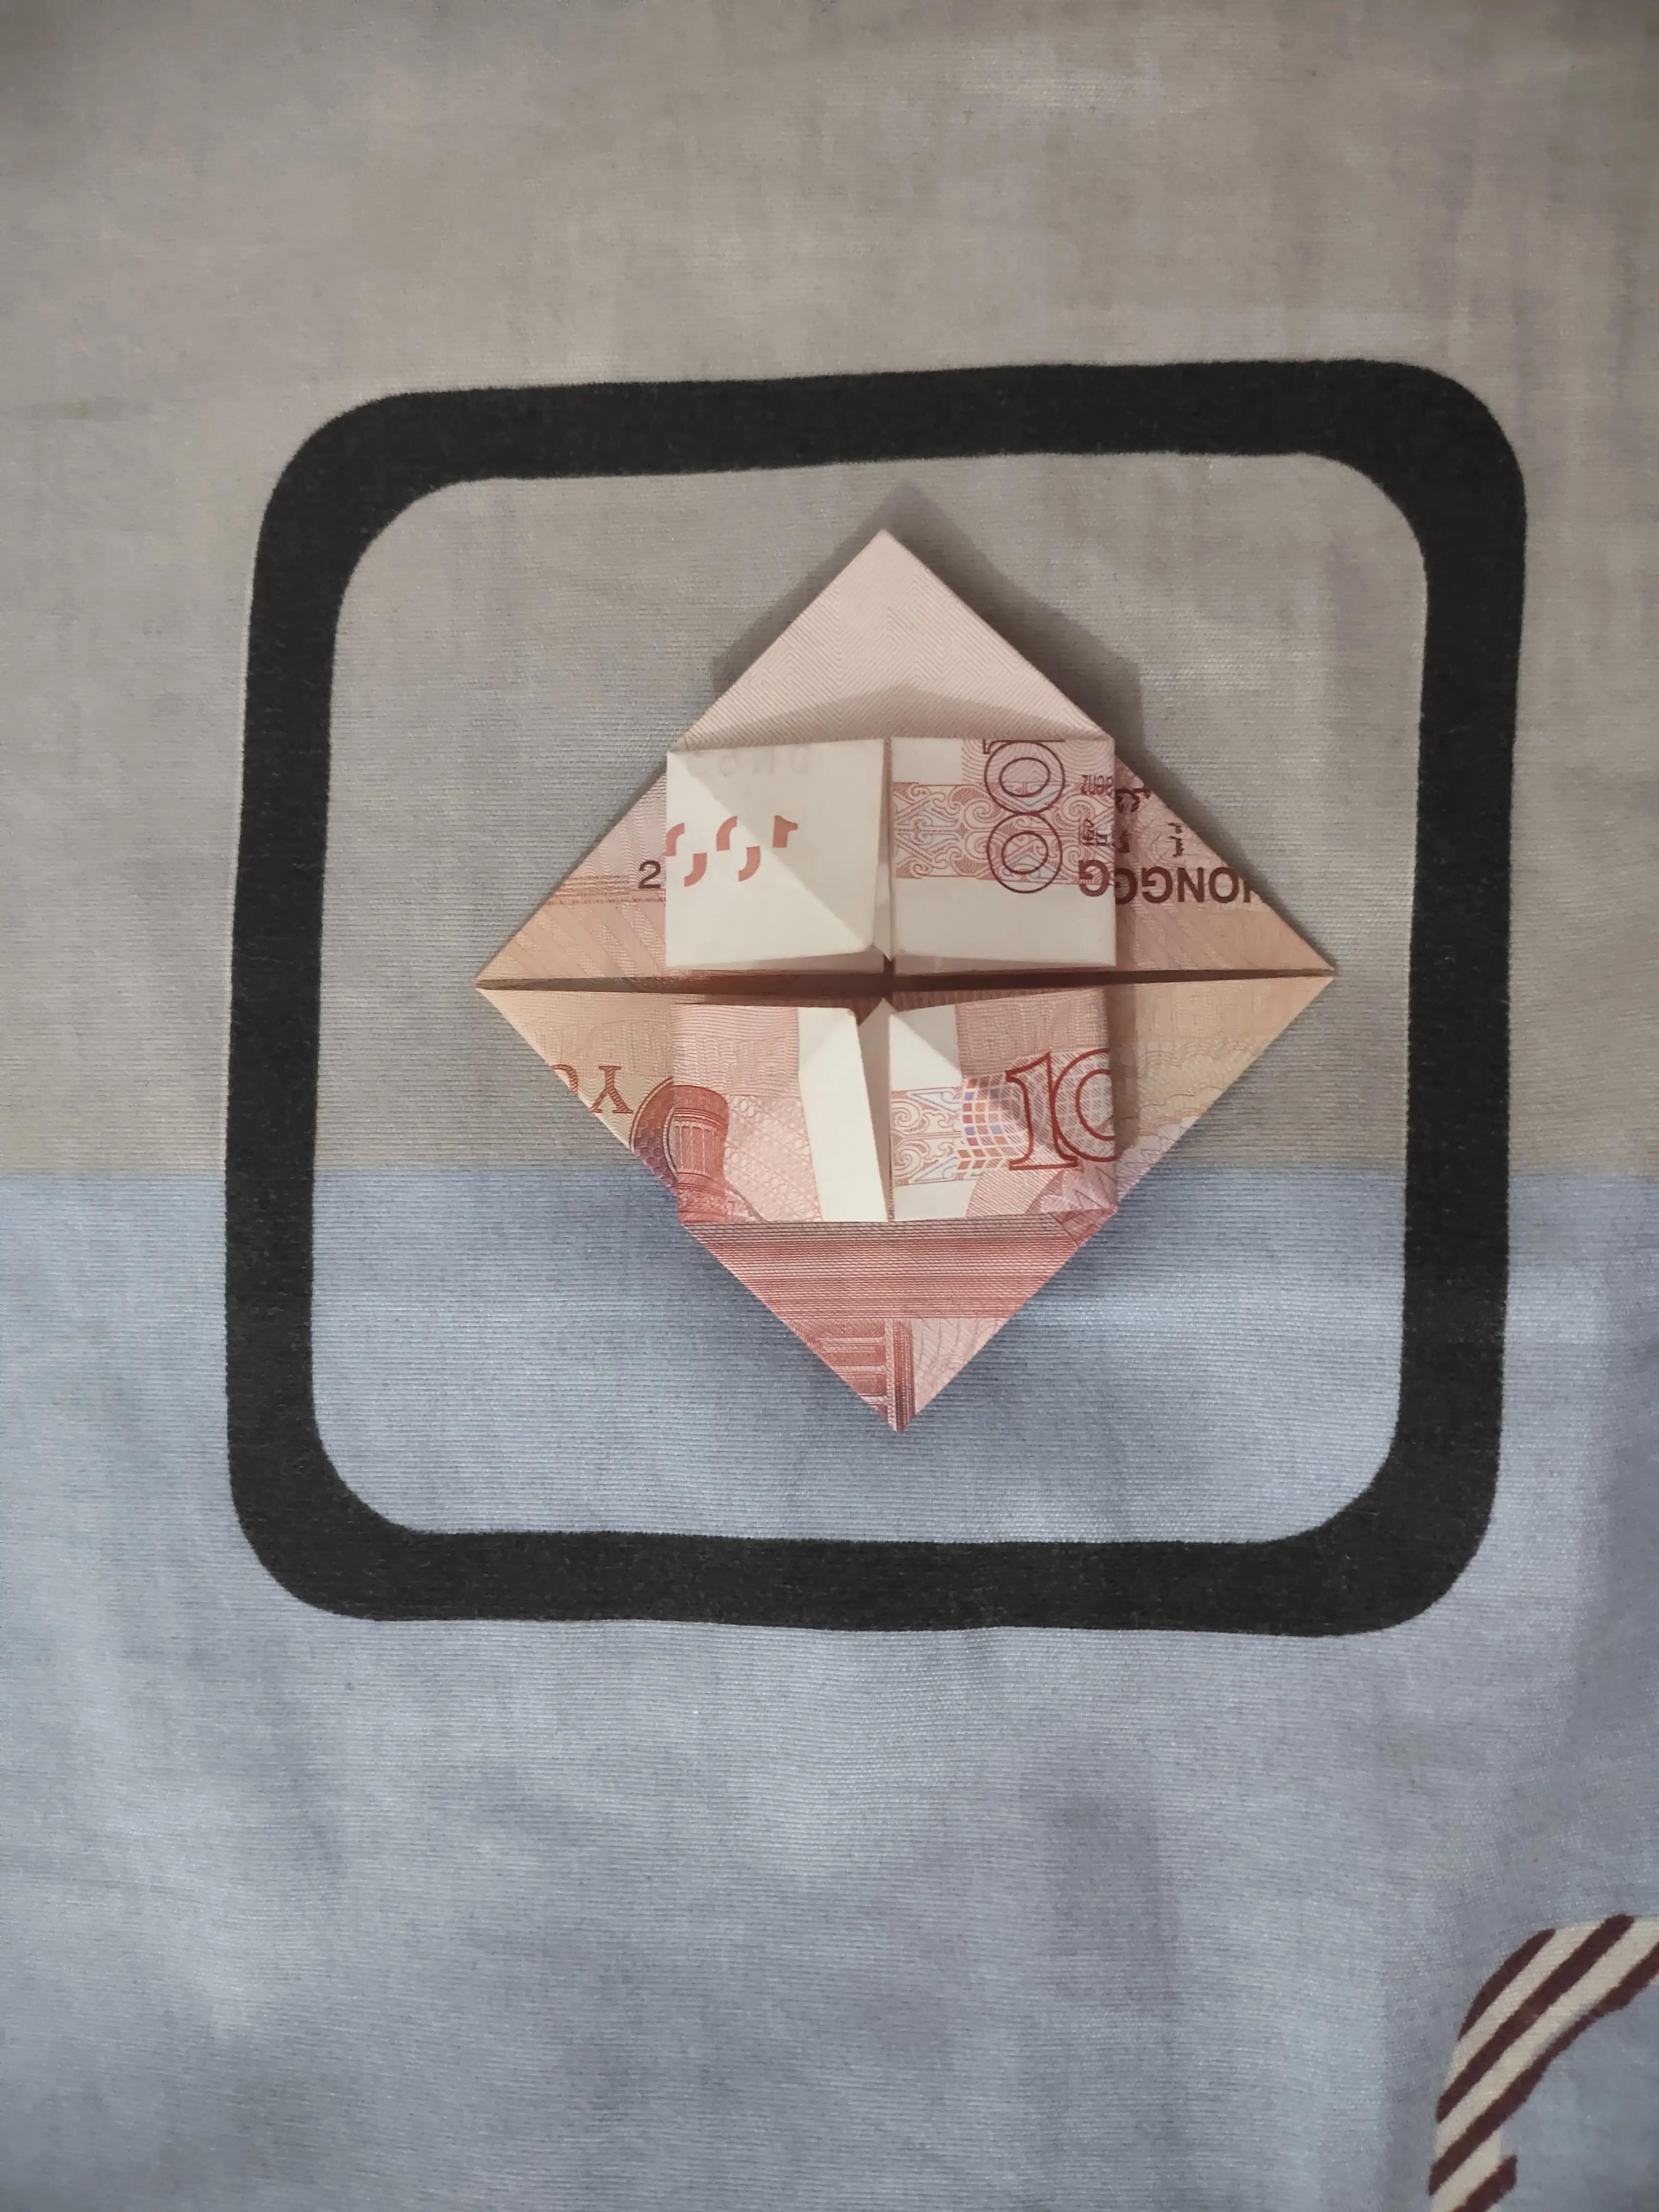 折纸爱心步骤图人民币图片